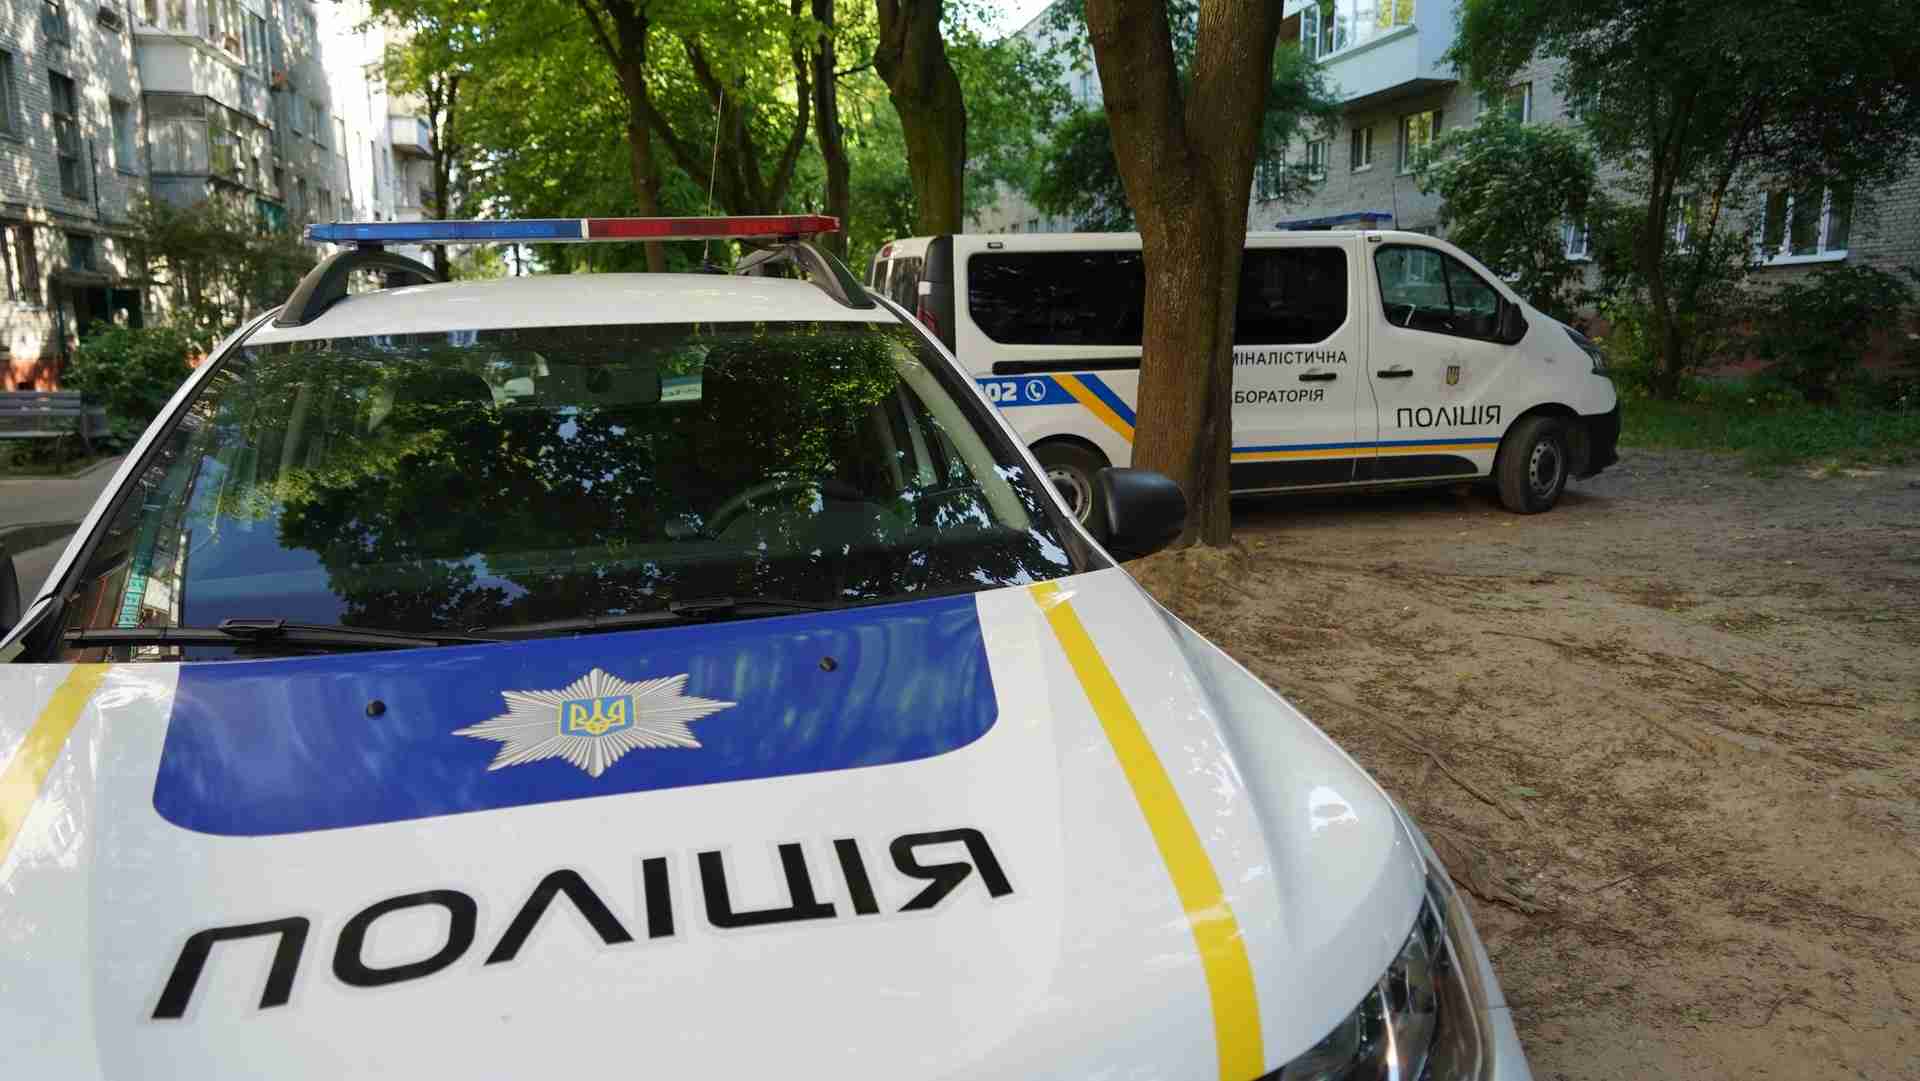 Вогнепальне поранення підлітка: у поліції розповіли подробиці інциденту у Львові (ФОТО)